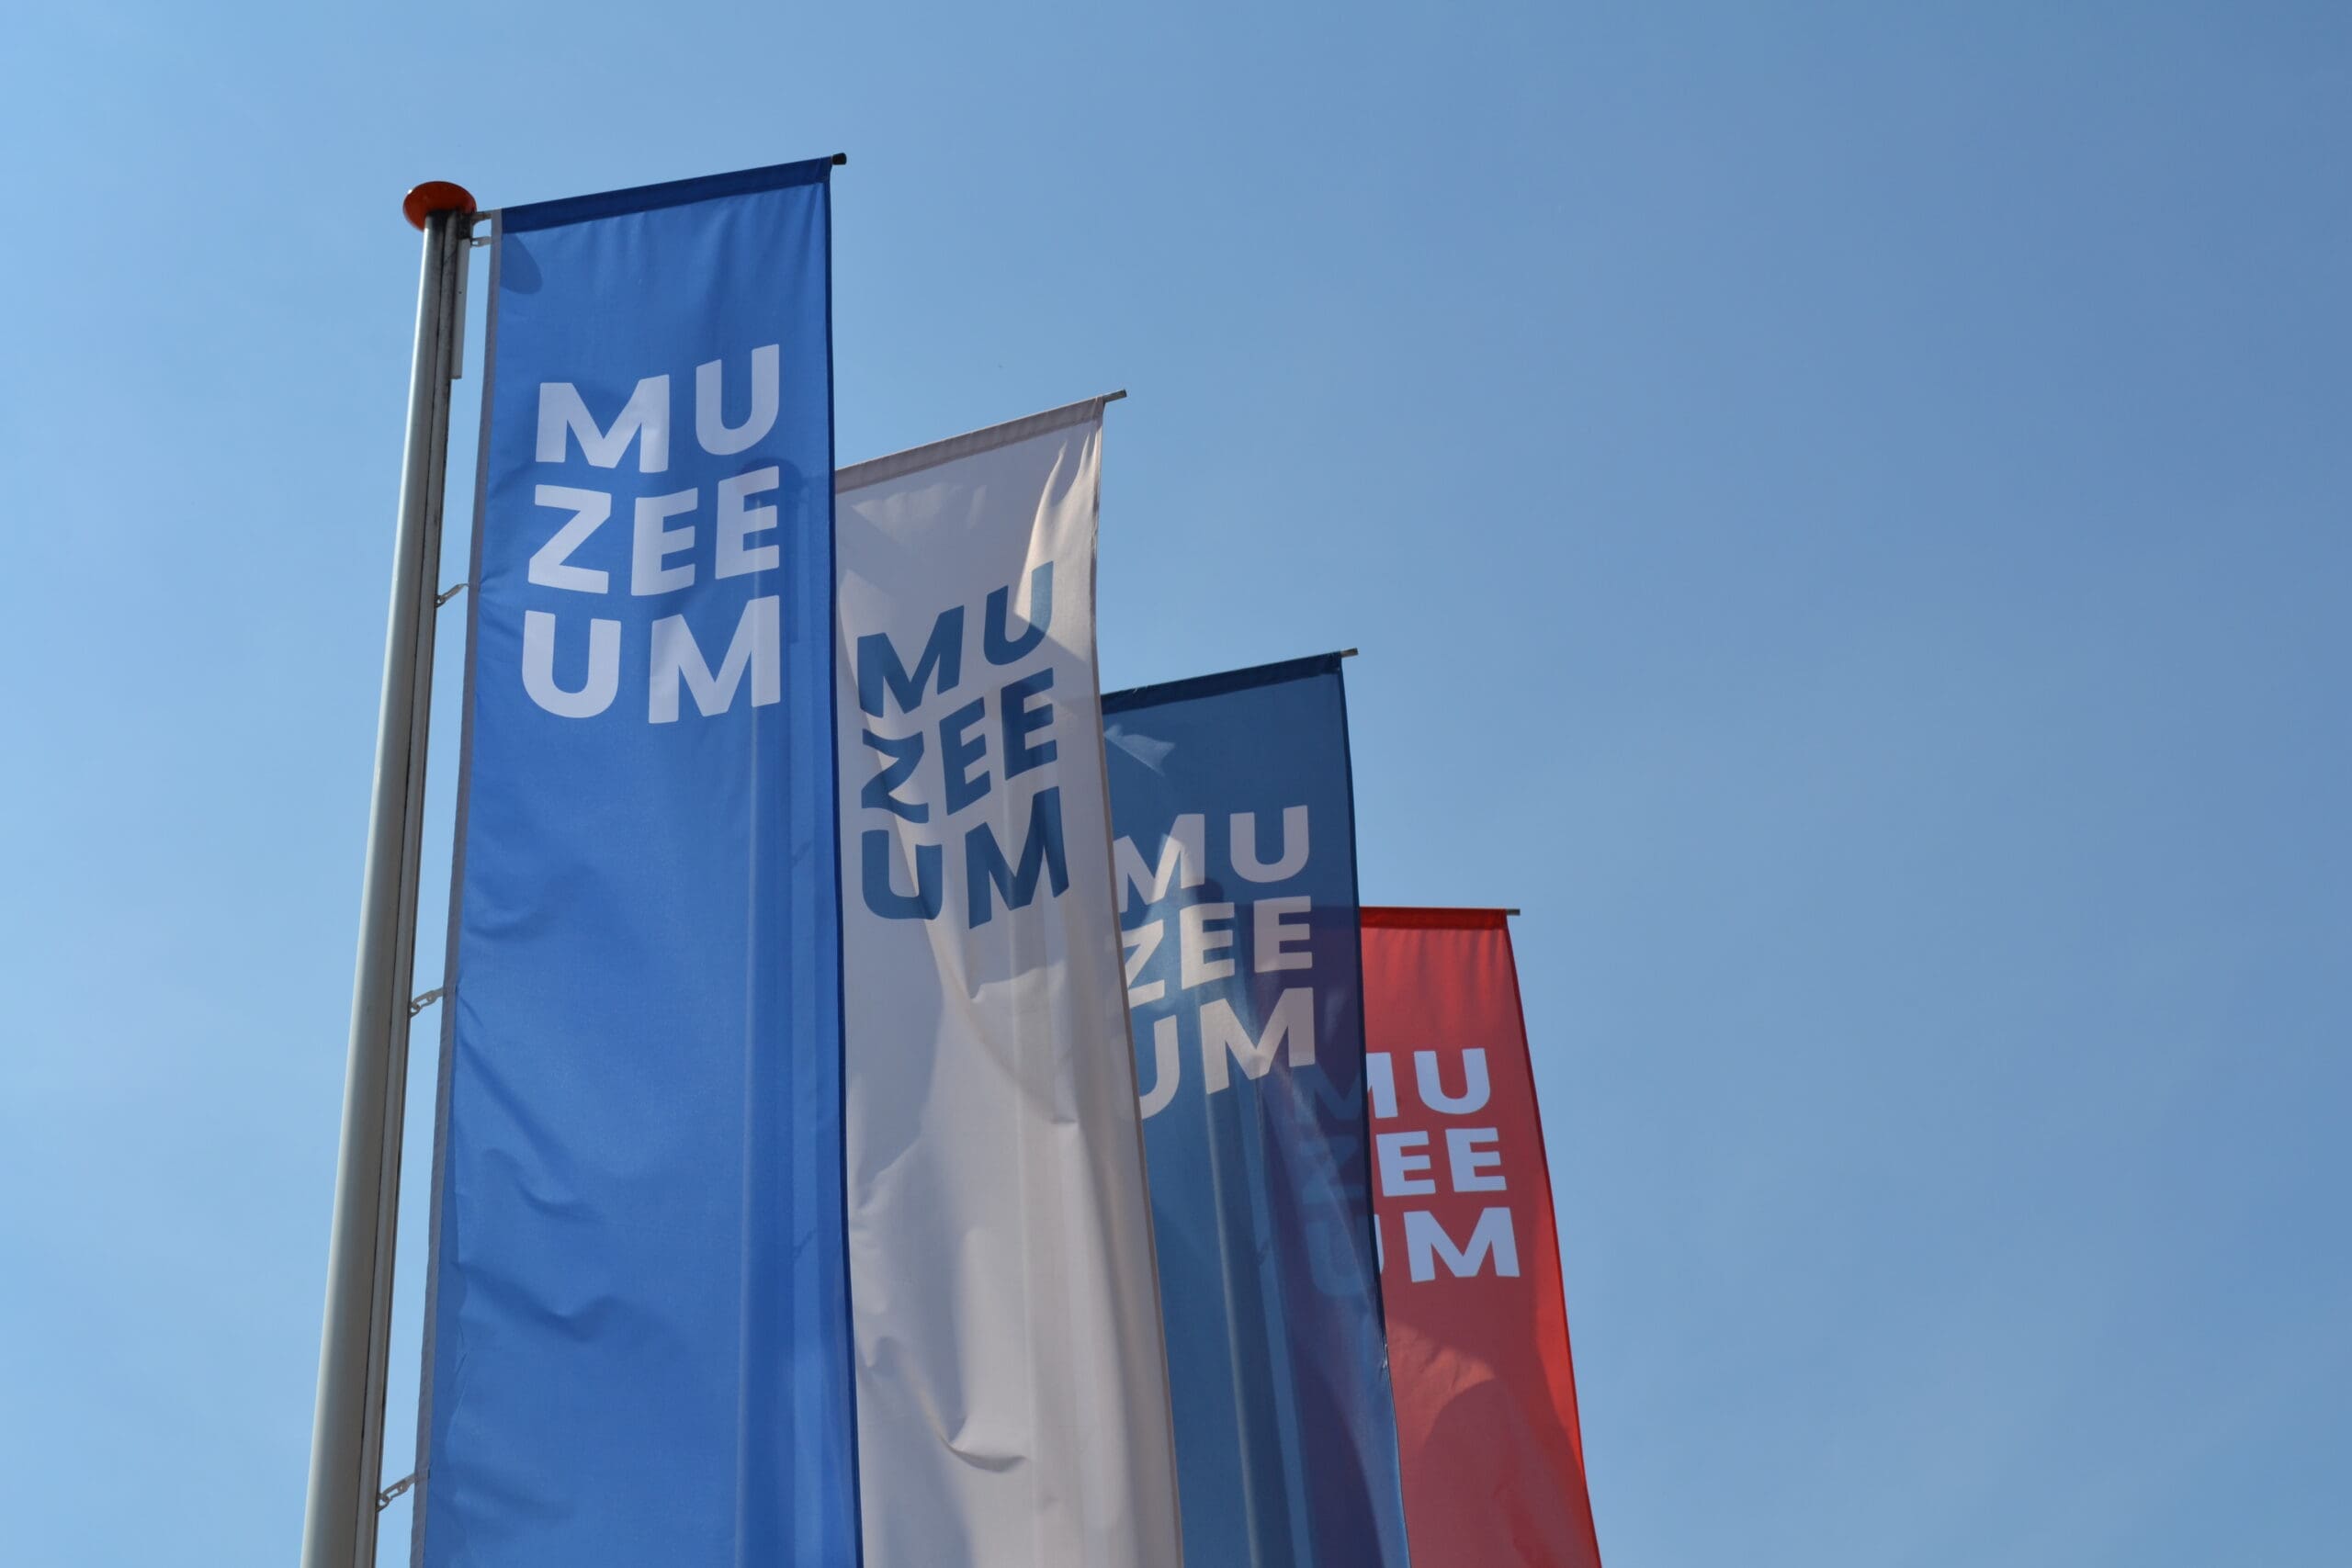 Baniervlaggen bij Muzeeum in Vlissingen